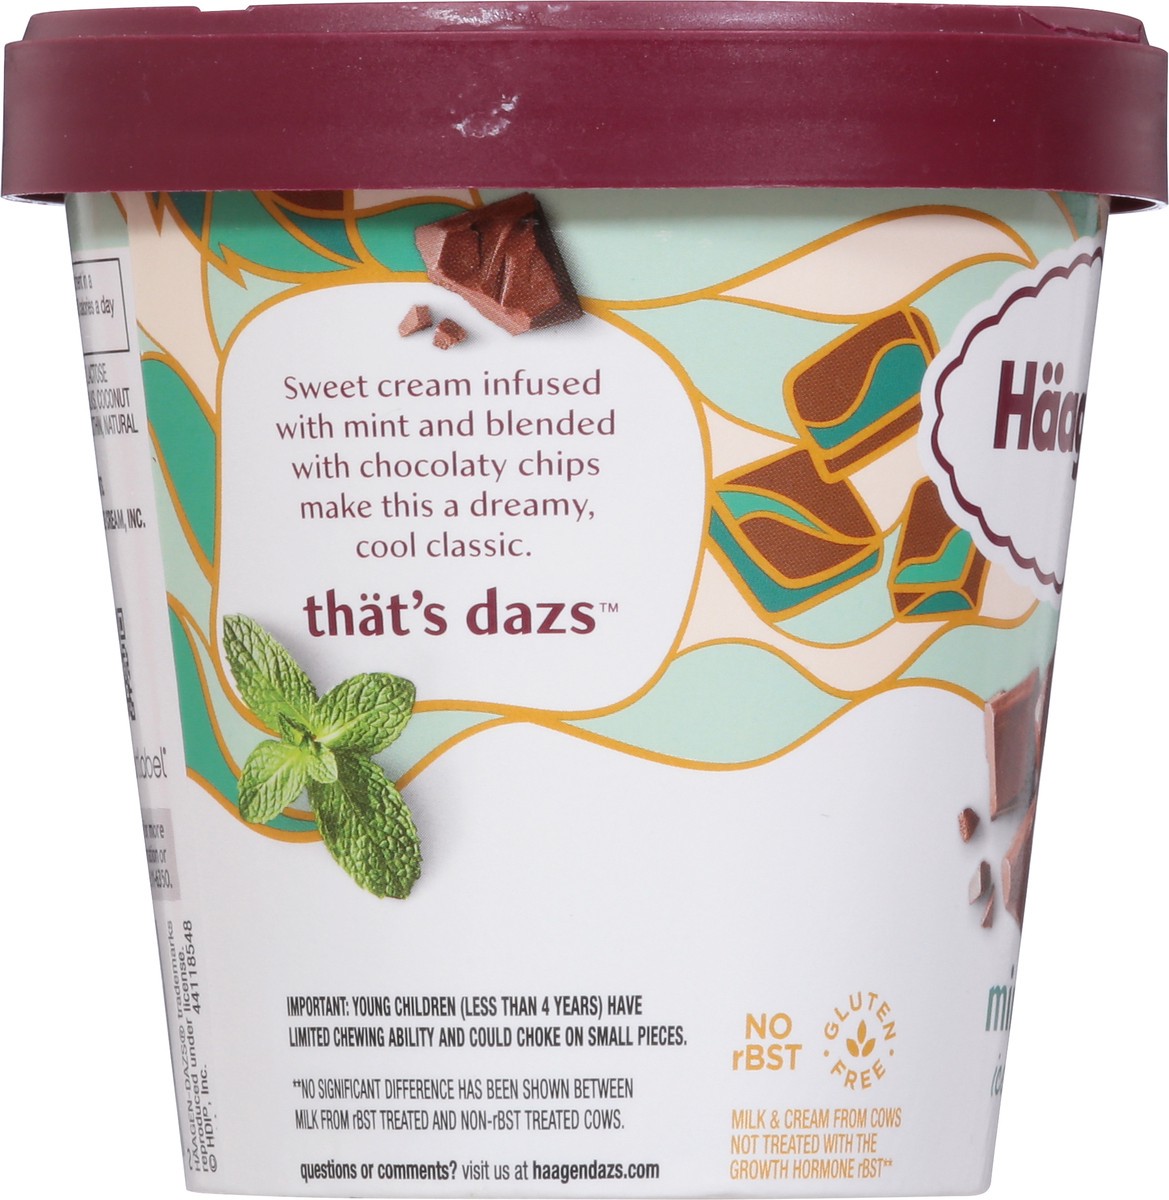 slide 4 of 9, Häagen-Dazs Ice Cream, 14 fl oz